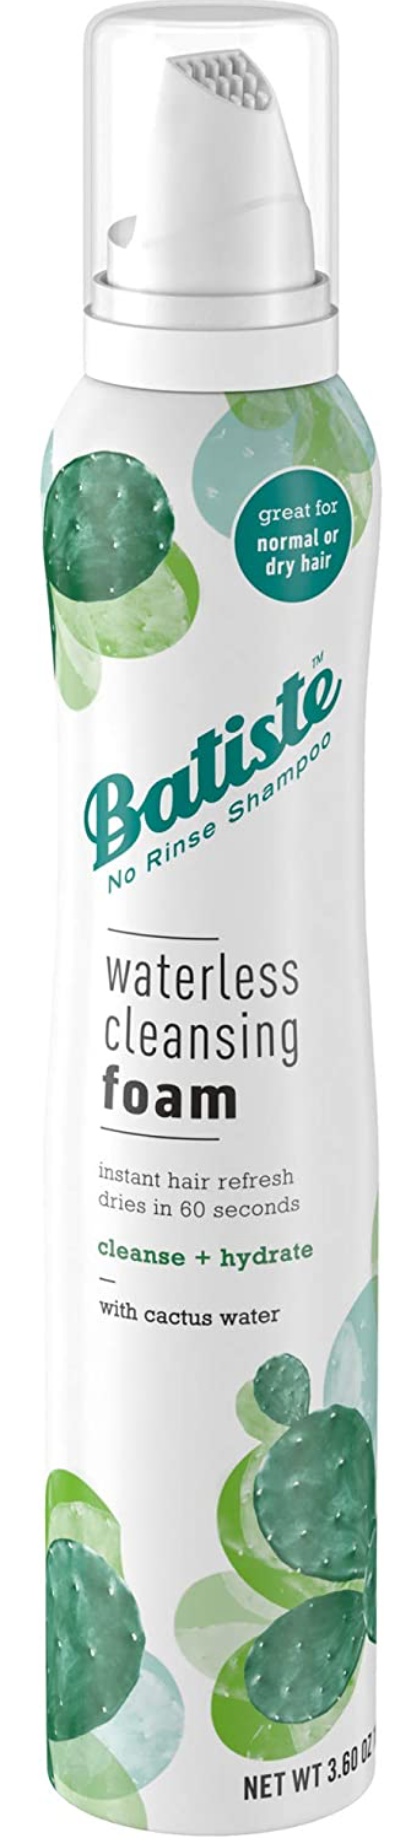 Batiste Waterless Cleansing Foam